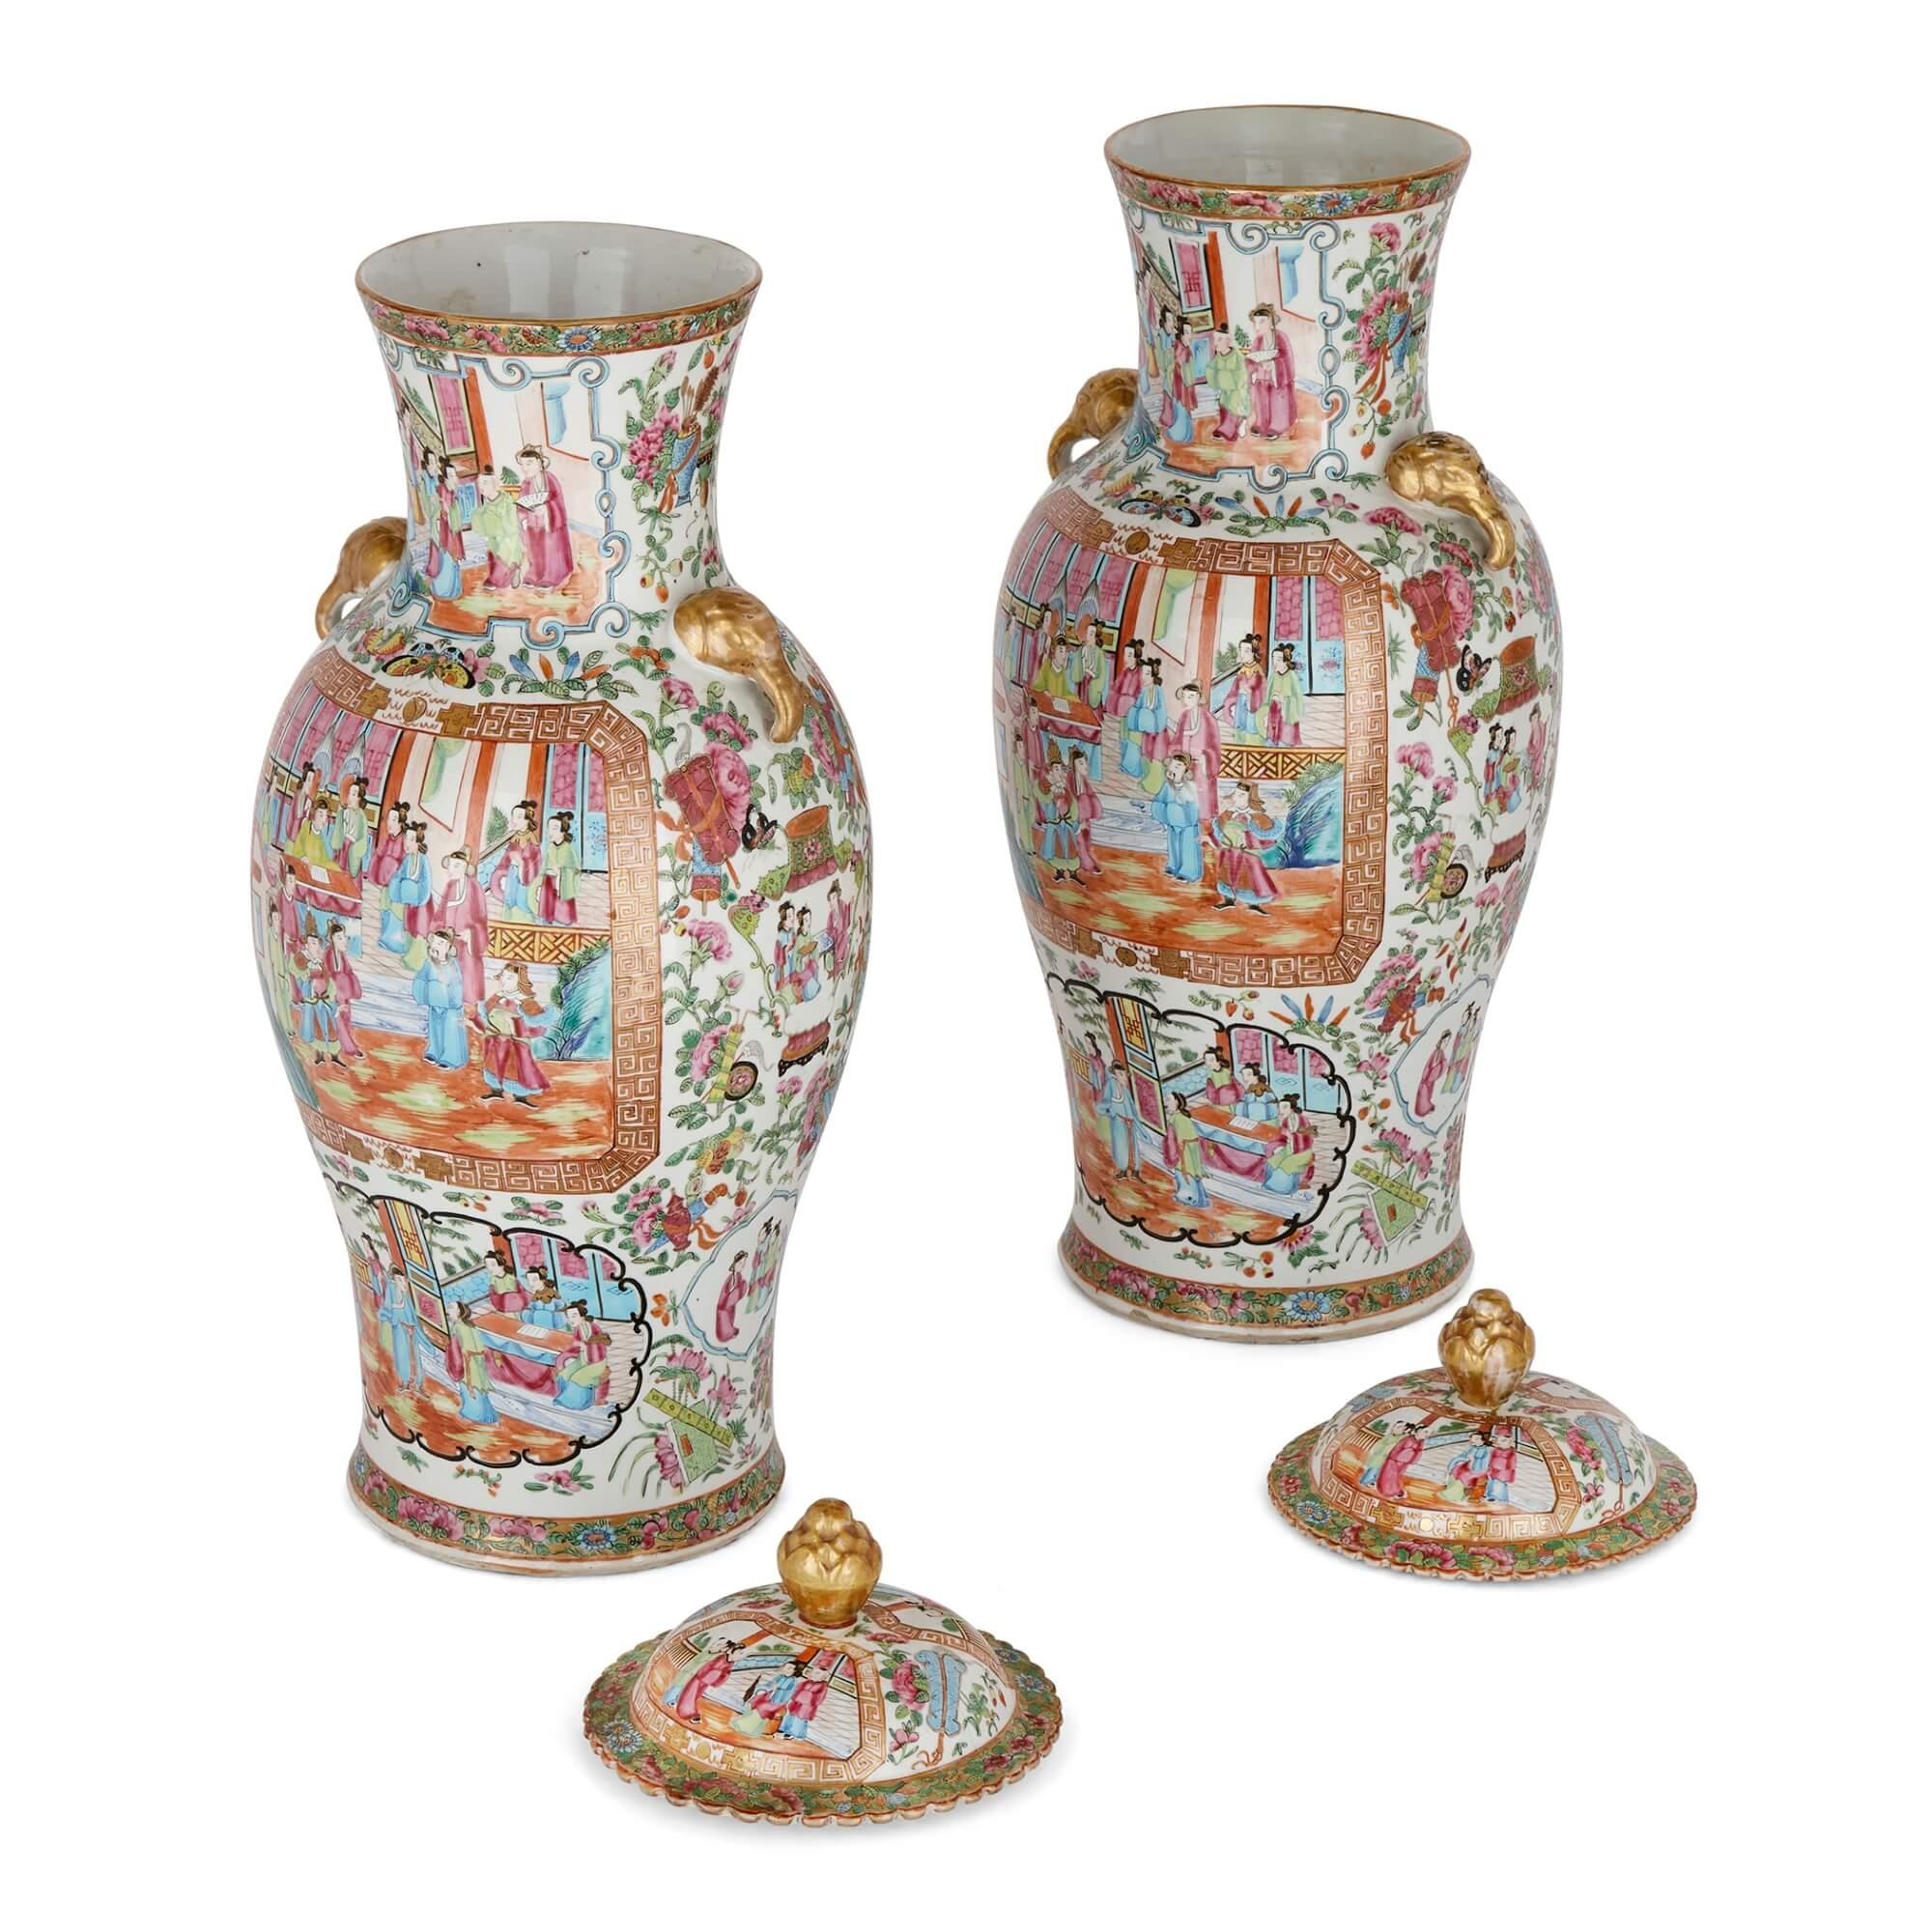 Zwei große Porzellanvasen im Canton-Stil im Stil der Famille Rose.
Chinesisch, Ende 19. Jahrhundert.
Maße: Höhe 64 cm, Durchmesser 25 cm.

Diese feinen, mit Deckeln versehenen Porzellanvasen wurden im China der Qing-Dynastie im späten 19.